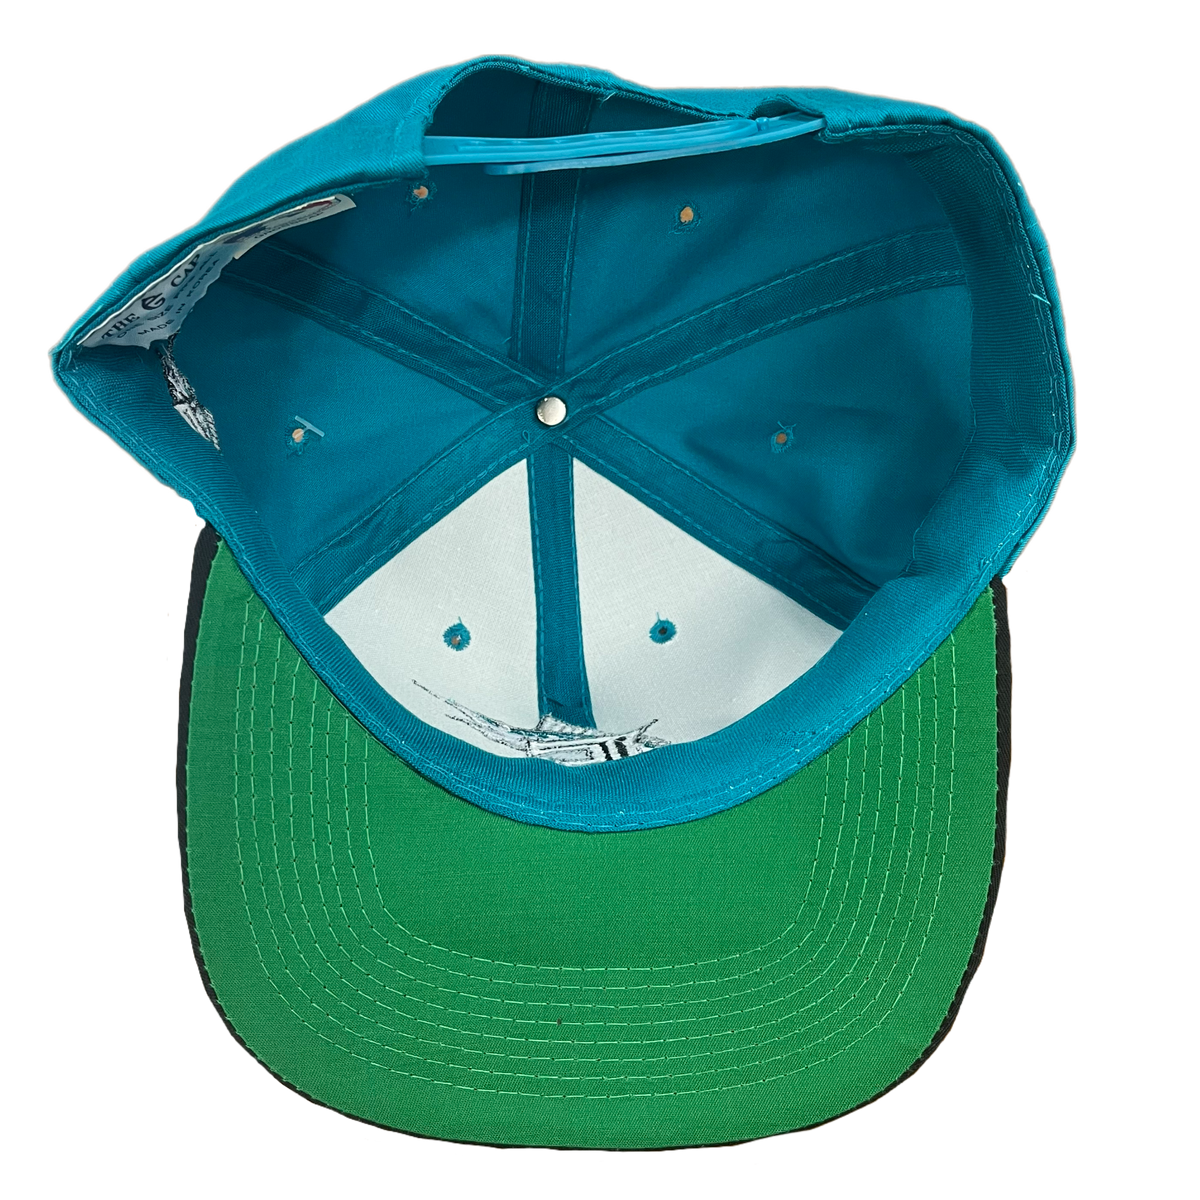 Vintage Florida Marlins &quot;MLB&quot; Teal Snapback Hat